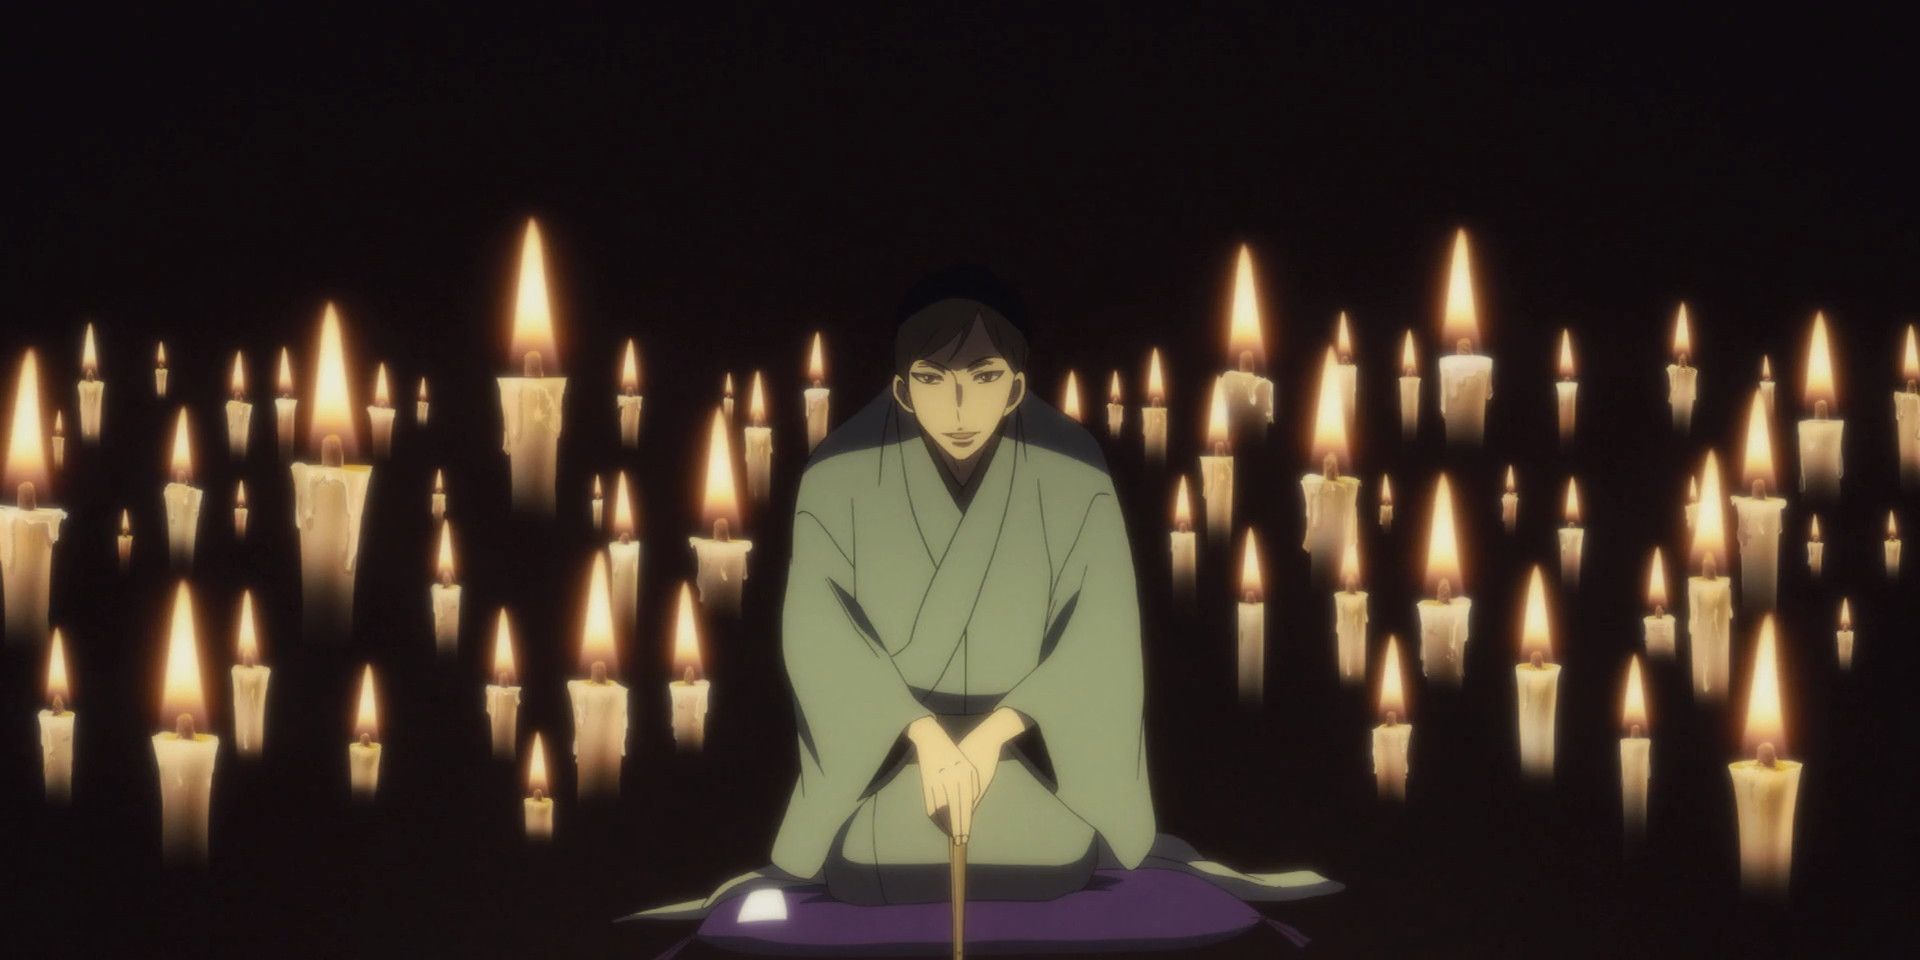 Showa Genroku Rakugo Shinju Candles